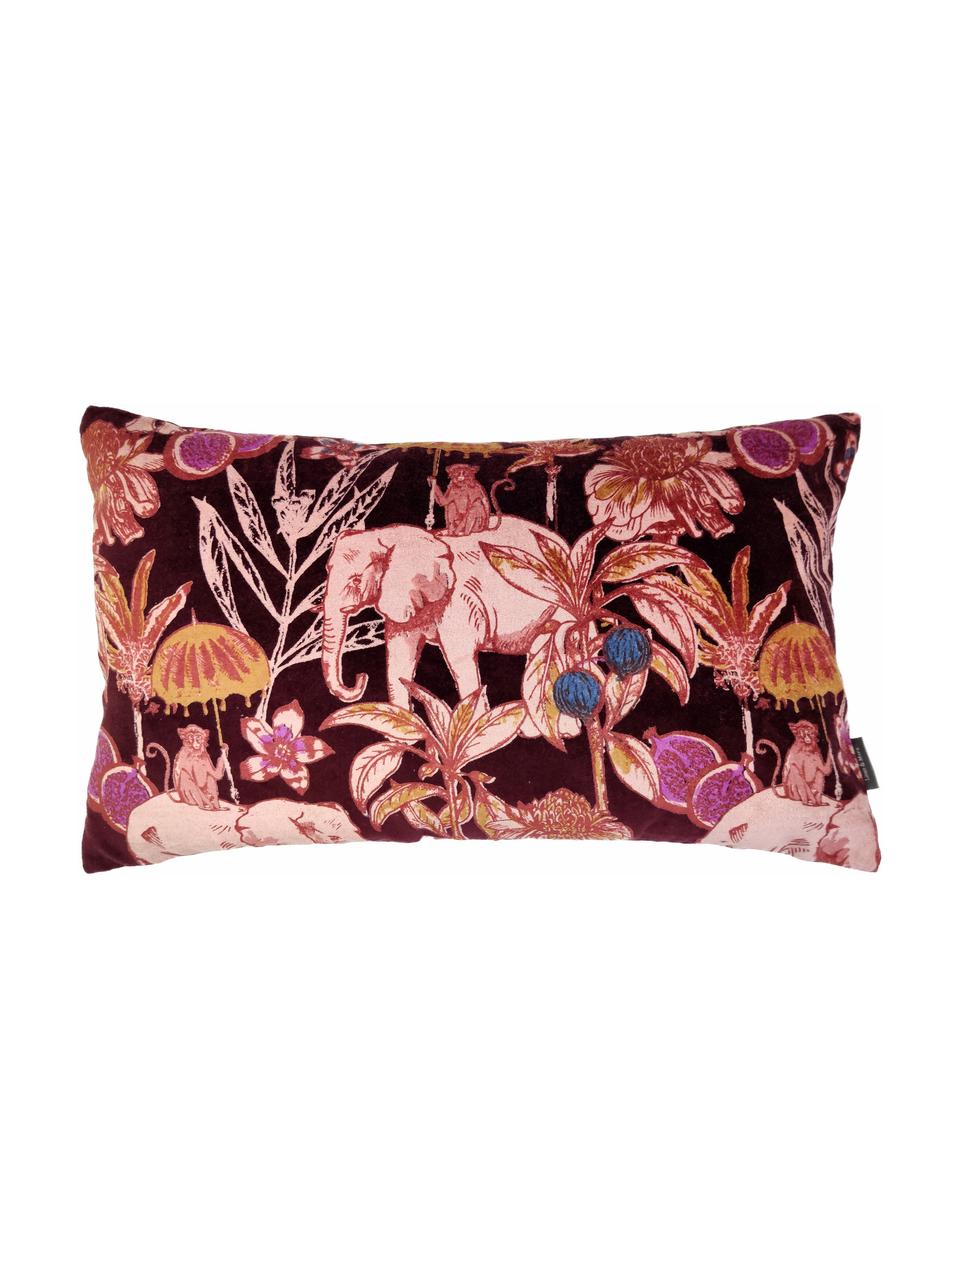 Cuscino in velluto con imbottitura Elephant, Rivestimento: 100% cotone, velluto, Rosso bordeaux, multicolore, Larg. 30 x Lung. 50 cm